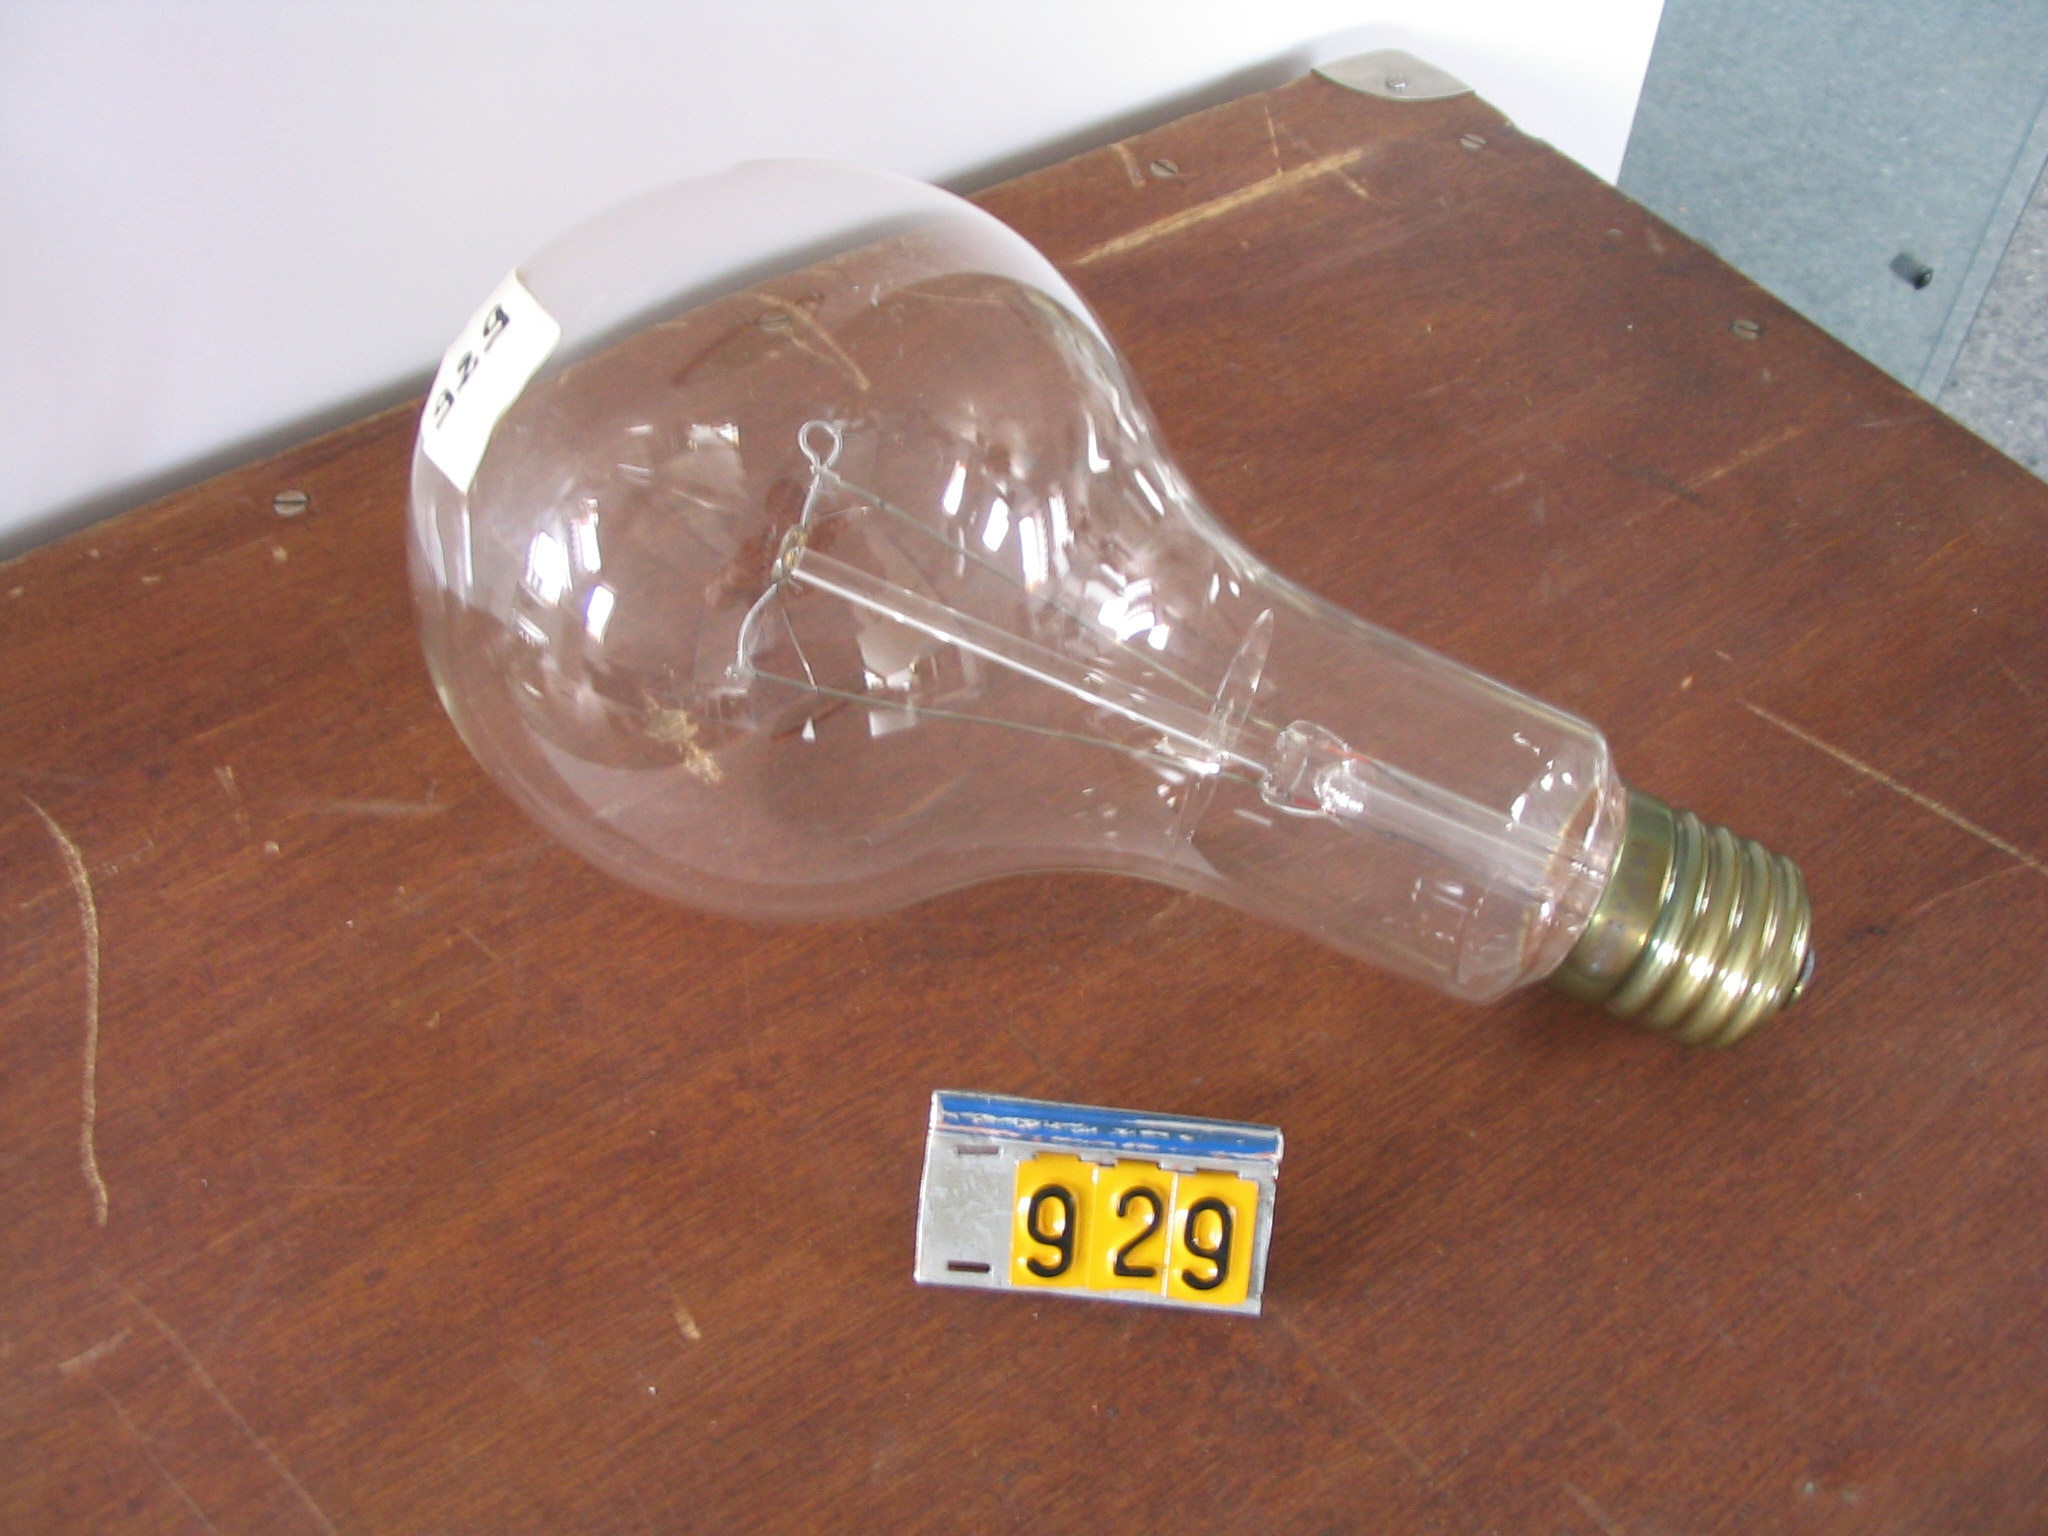  Collection ASPEG, pièce numéro 929 : Ampoules d'éclairage public ( 3 )